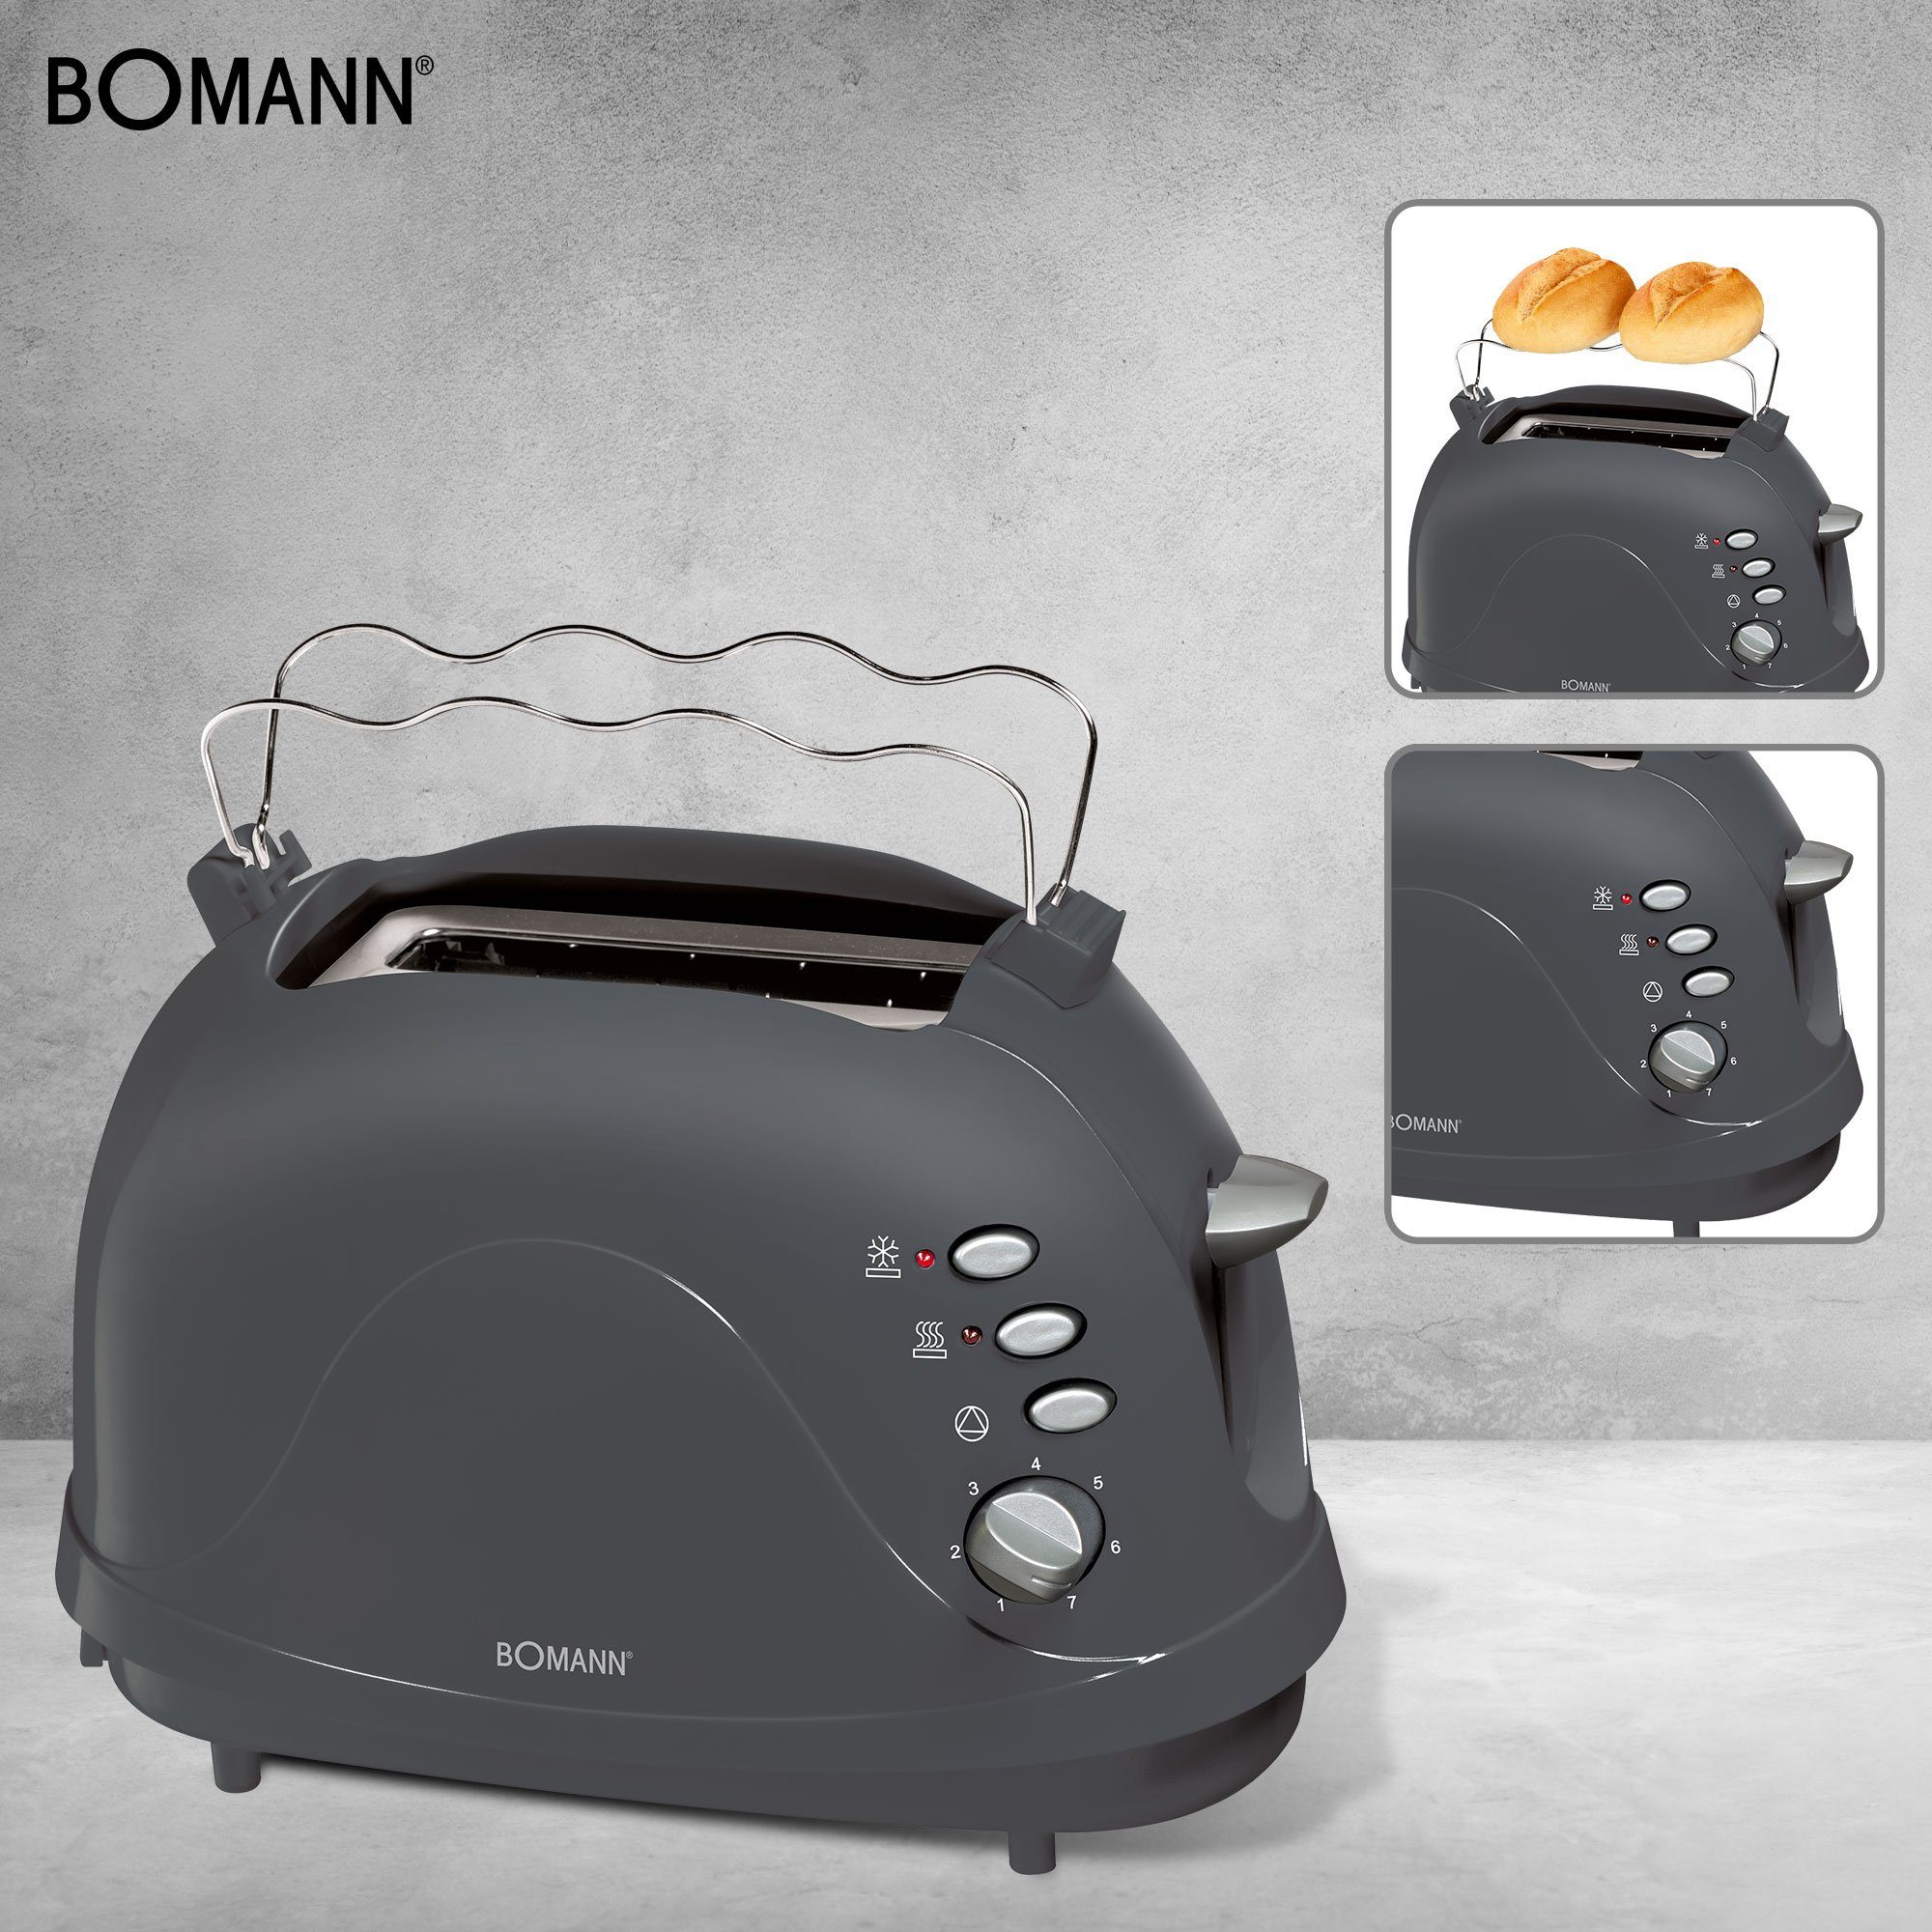 BOMANN Toaster Toastautomat TA grau 2 CB, 700 Scheiben Gehäuse, Krümelschublade, Schlitze, 246 2 (integriert) kurze für Brötchenaufsatz W, Toast, Cool-Touch